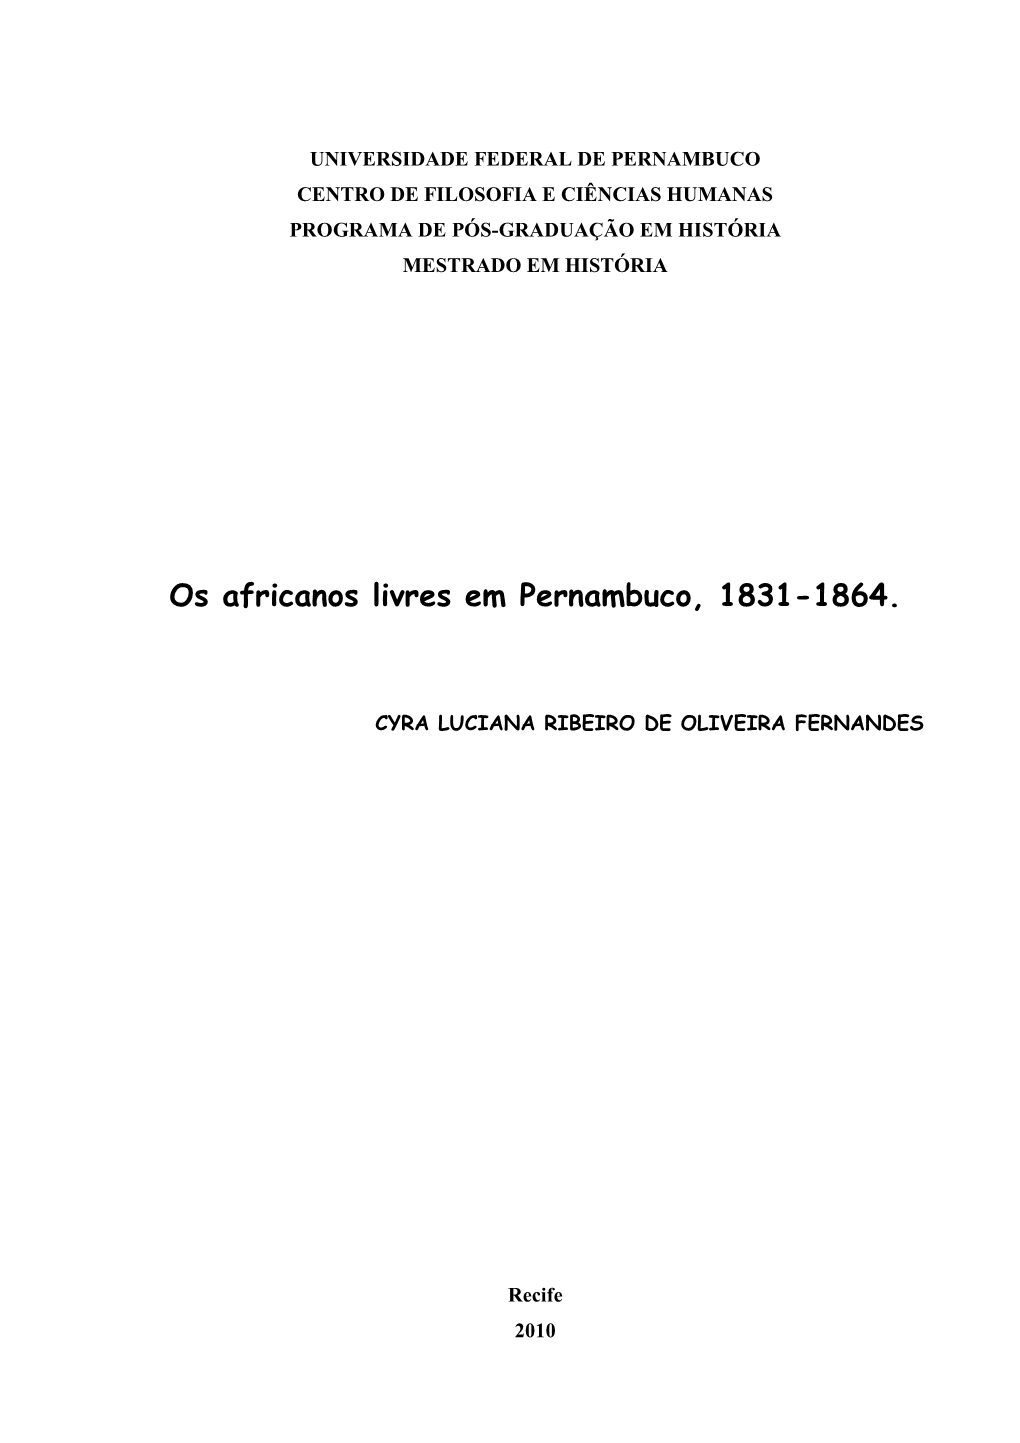 Os Africanos Livres Em Pernambuco, 1831-1864